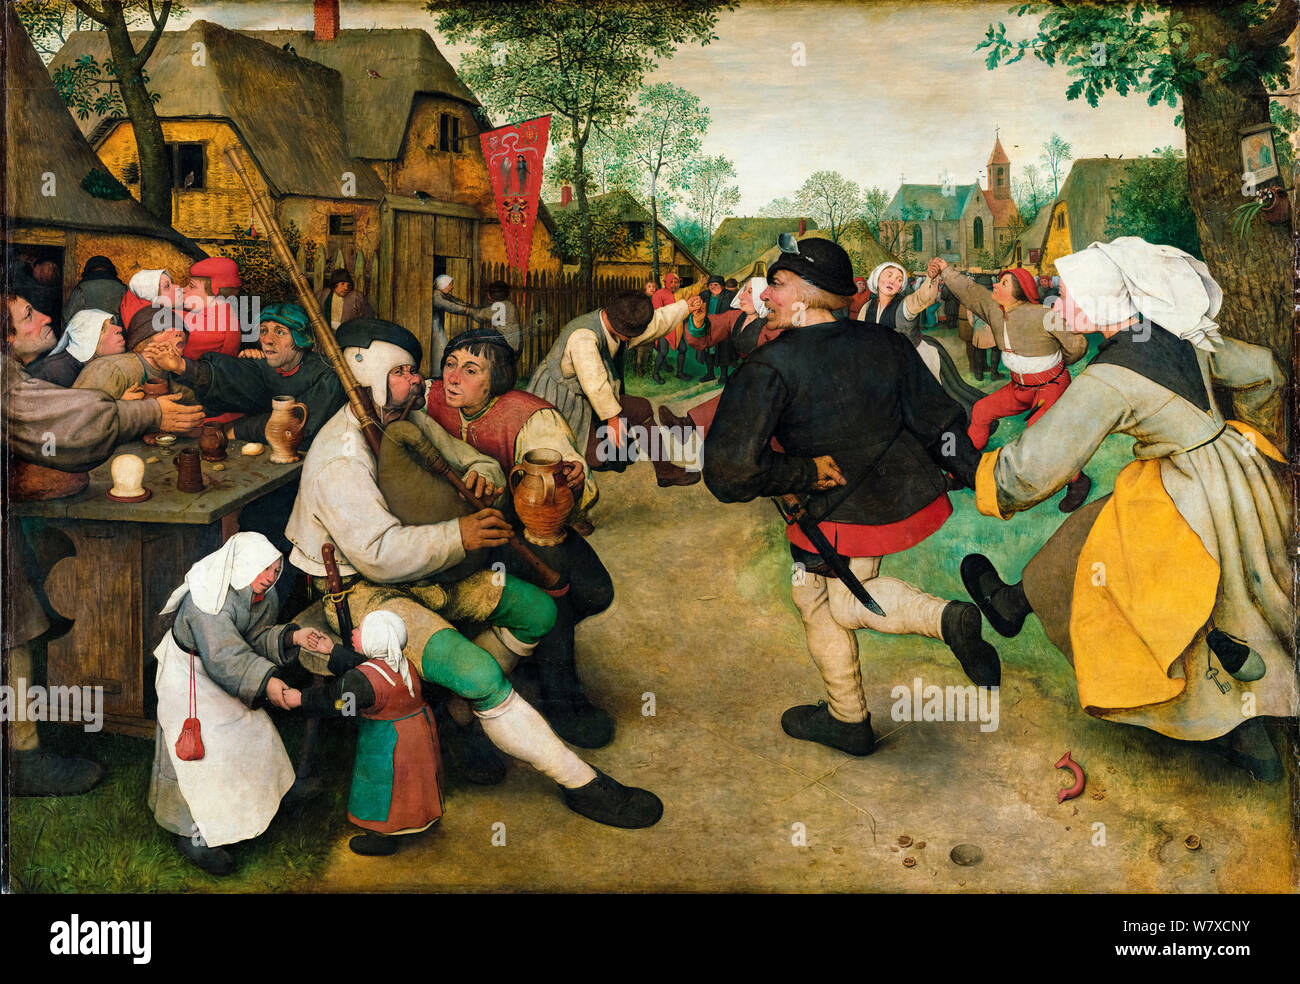 Pieter Bruegel el Viejo, el campesino, danza, pintura, 1568 Foto de stock